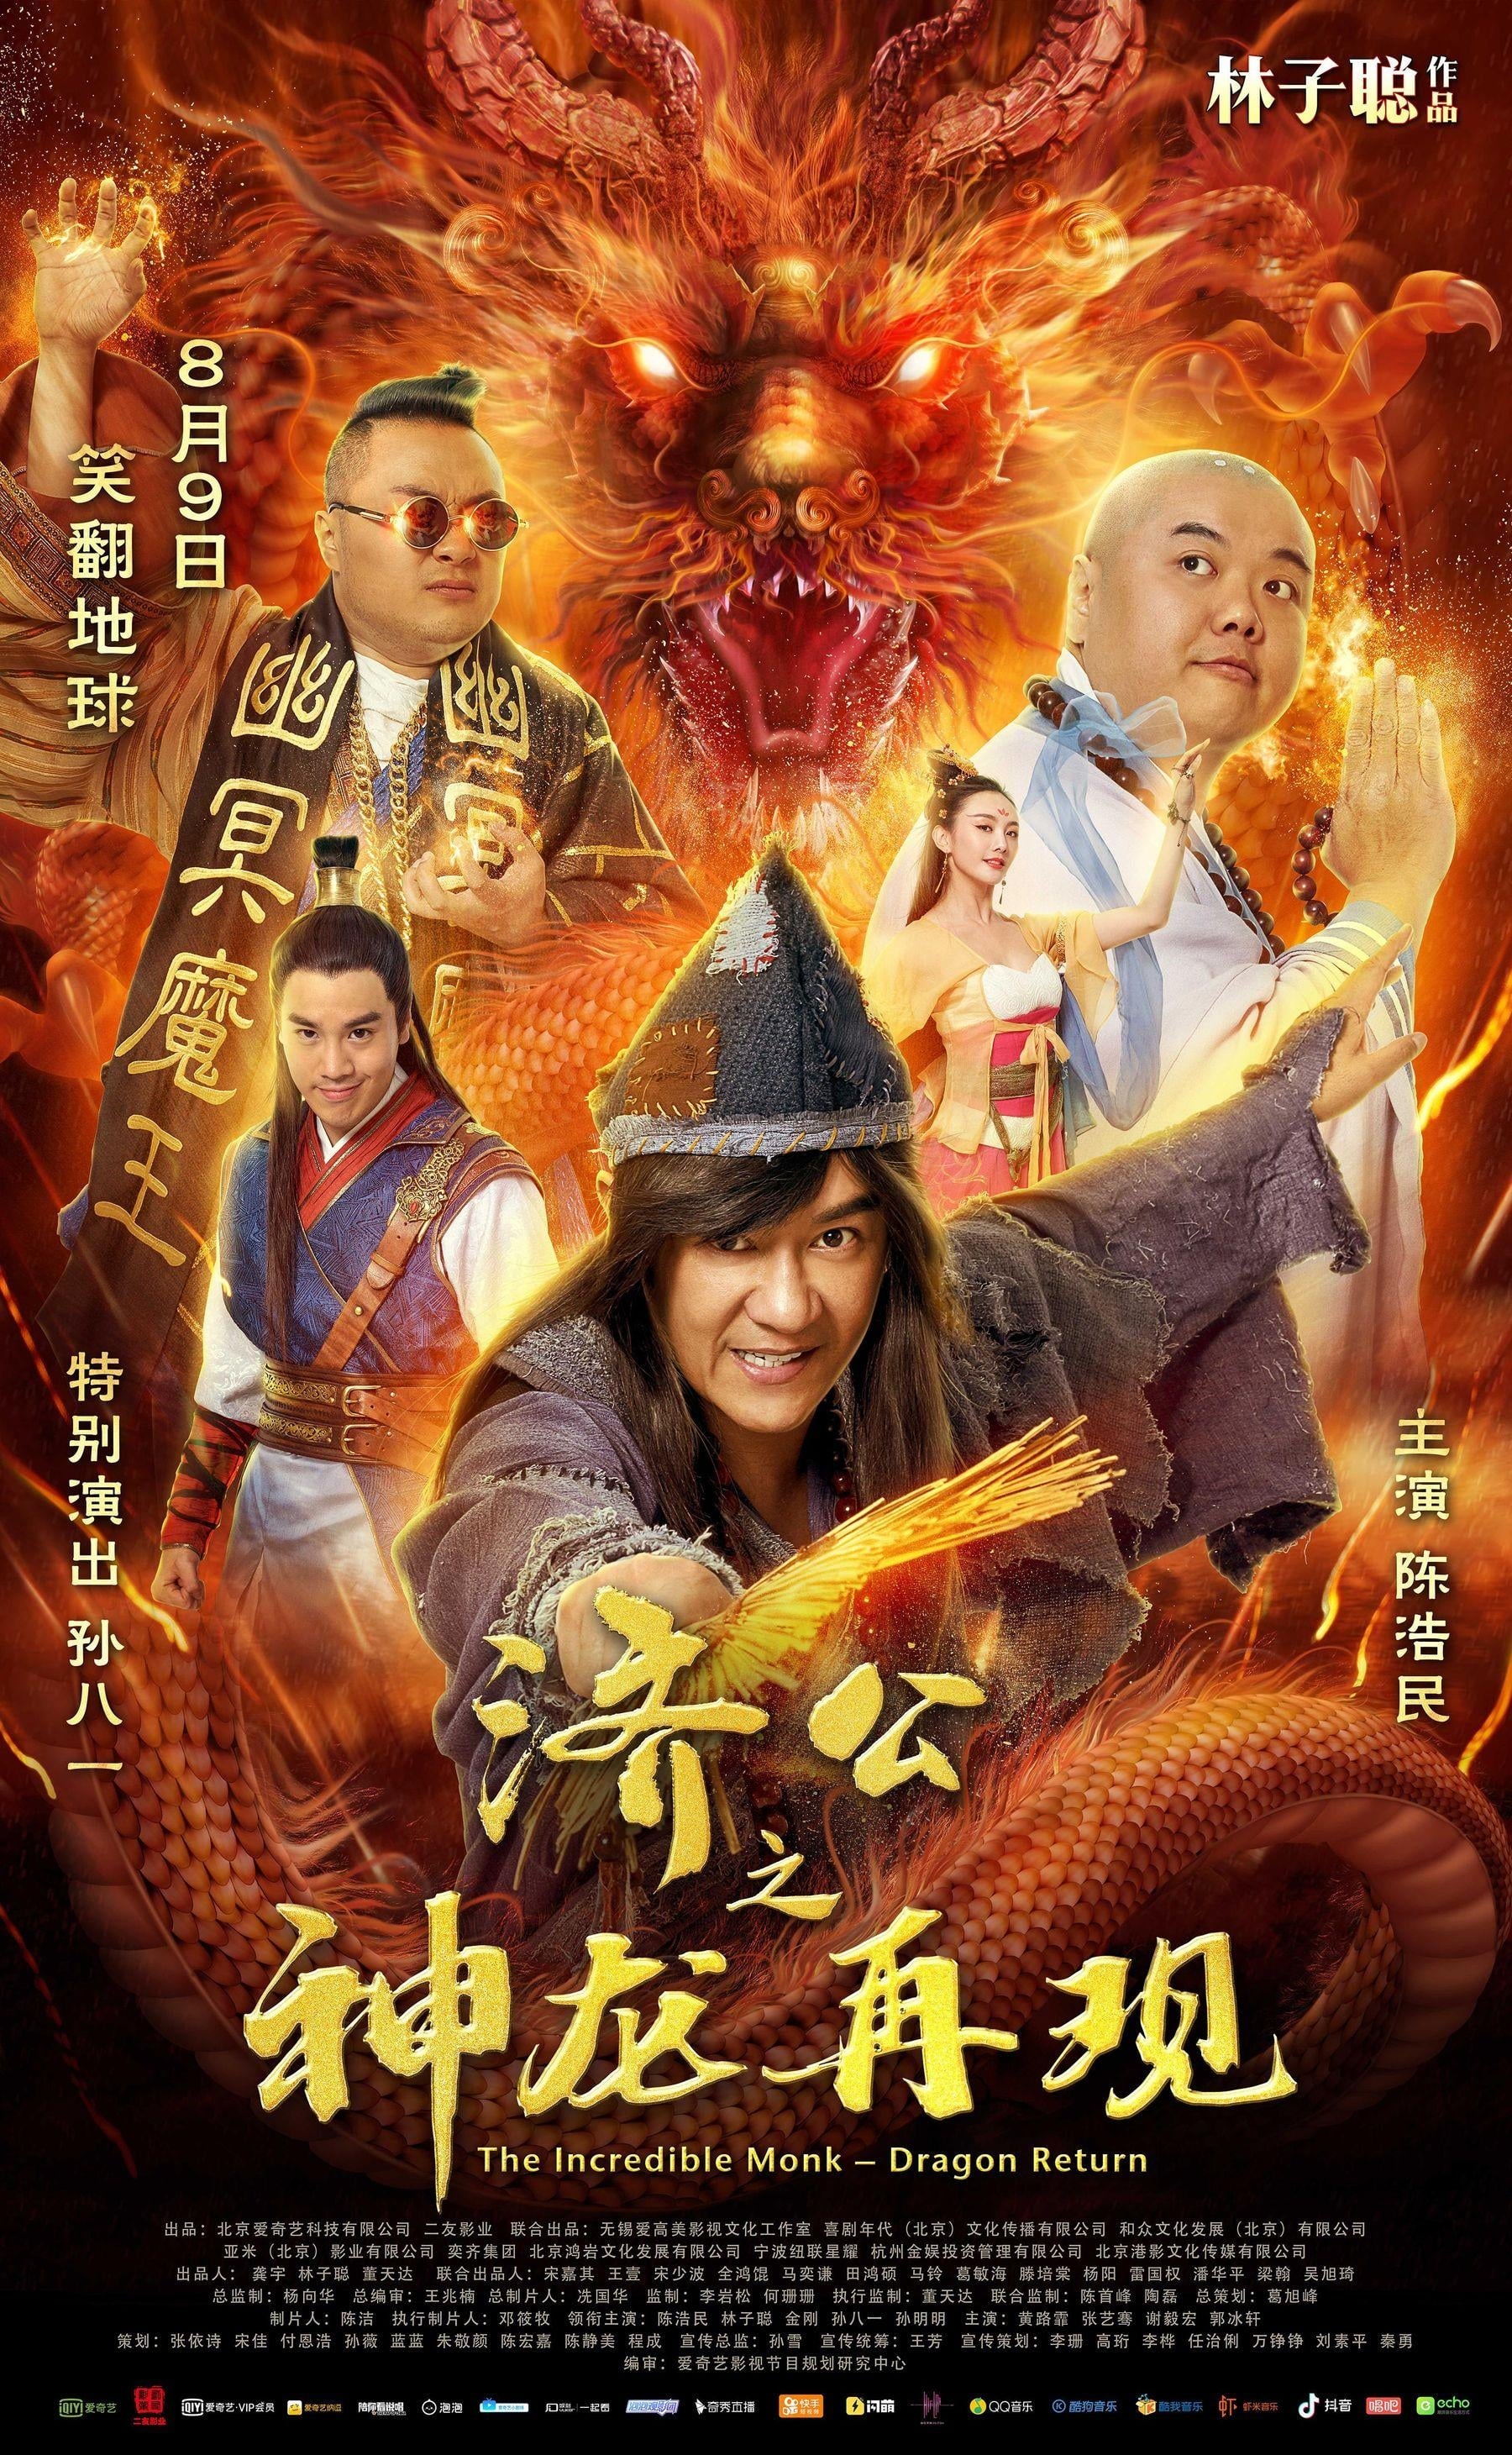 Tế Công Hàng Yêu 2: Thần Long Tái Thế – The Incredible Monk 2: Dragon Return Class (2018) Full HD Vietsub